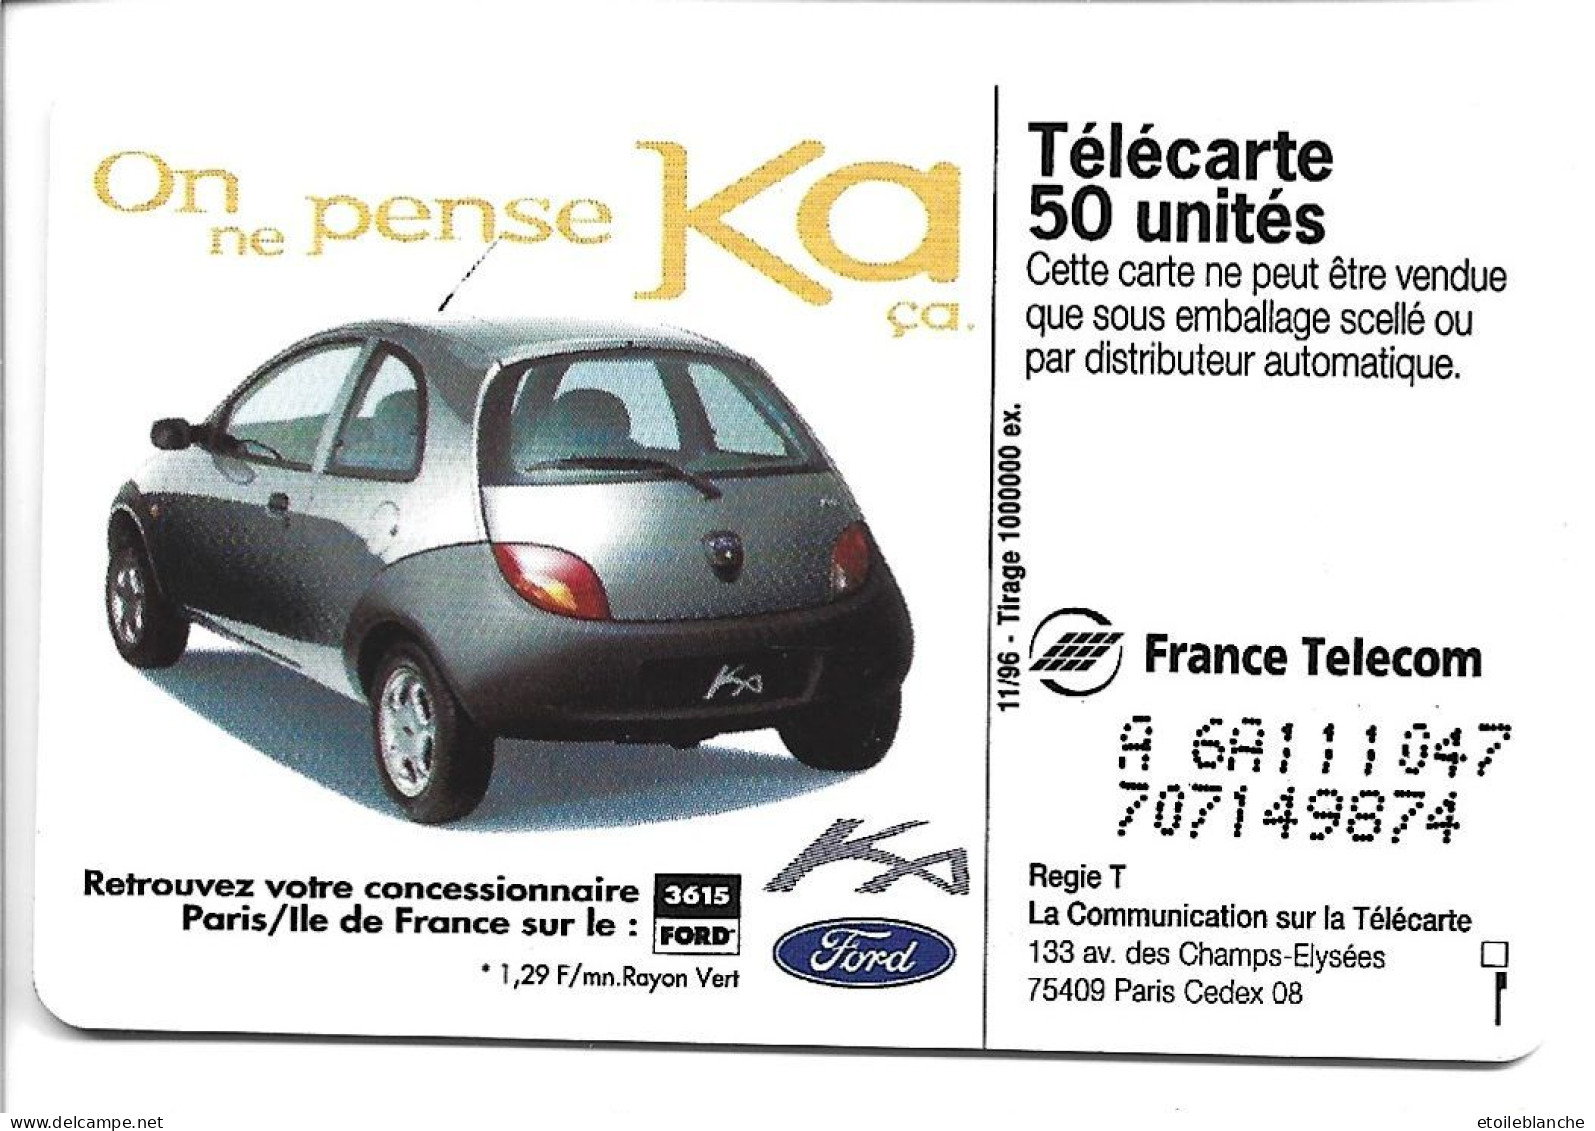 Telecarte Publicité Voiture Ford KA, On Ne Pense Qu'à ça -  Concessionnaire Paris Sur Minitel 3615 Ford - Autos